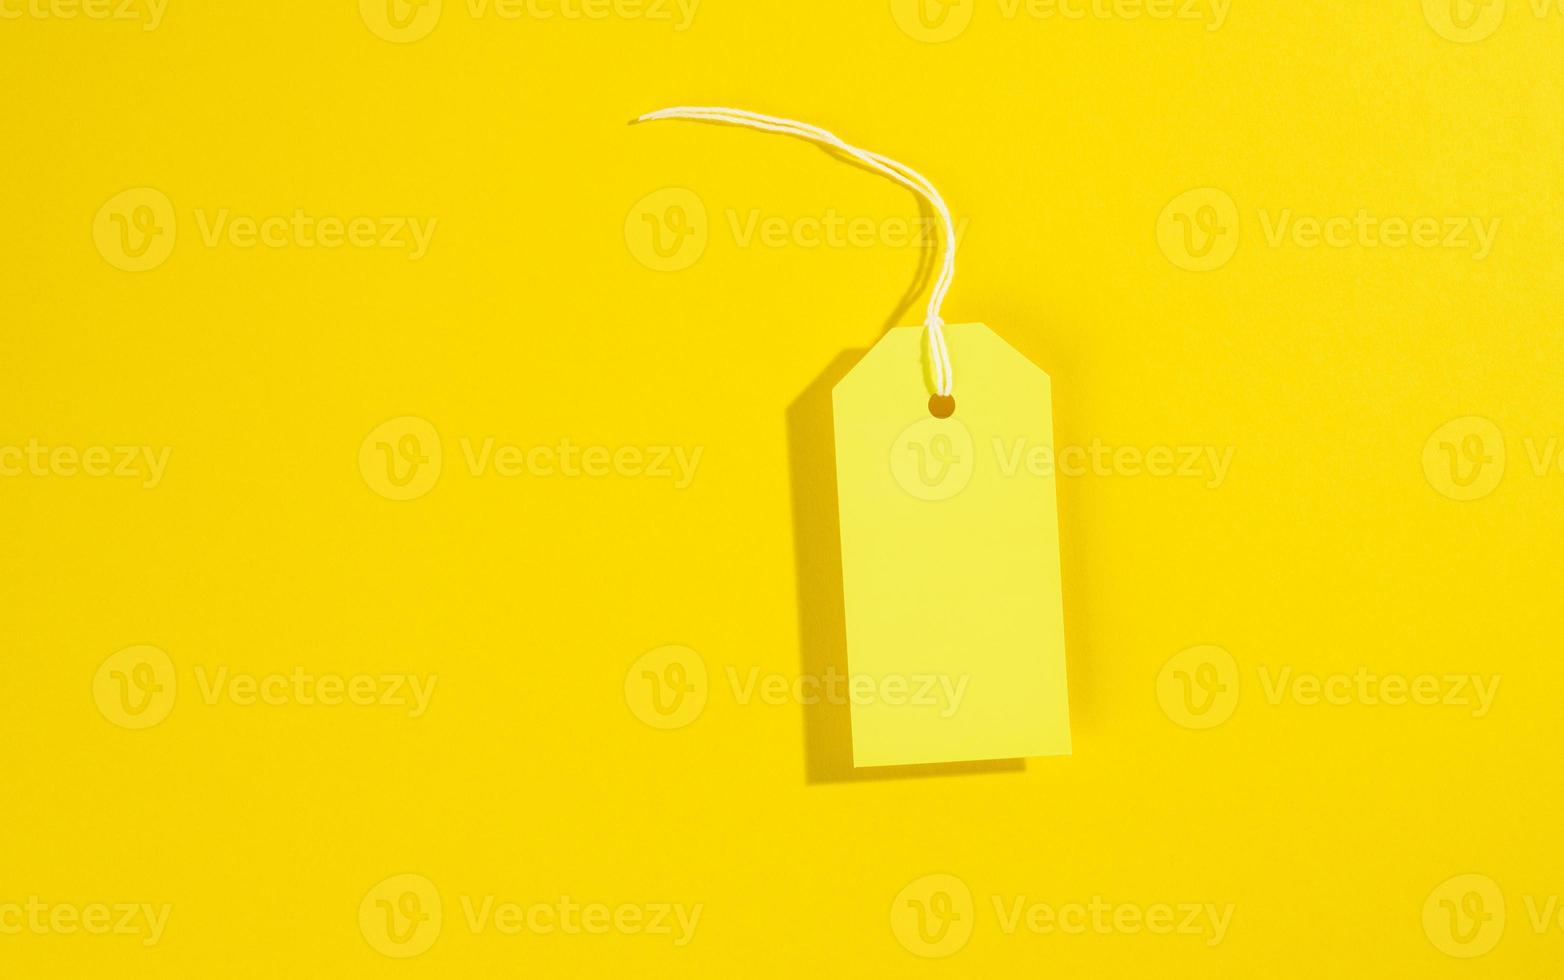 étiquette de prix jaune papier rectangulaire vierge avec corde blanche sur fond jaune photo